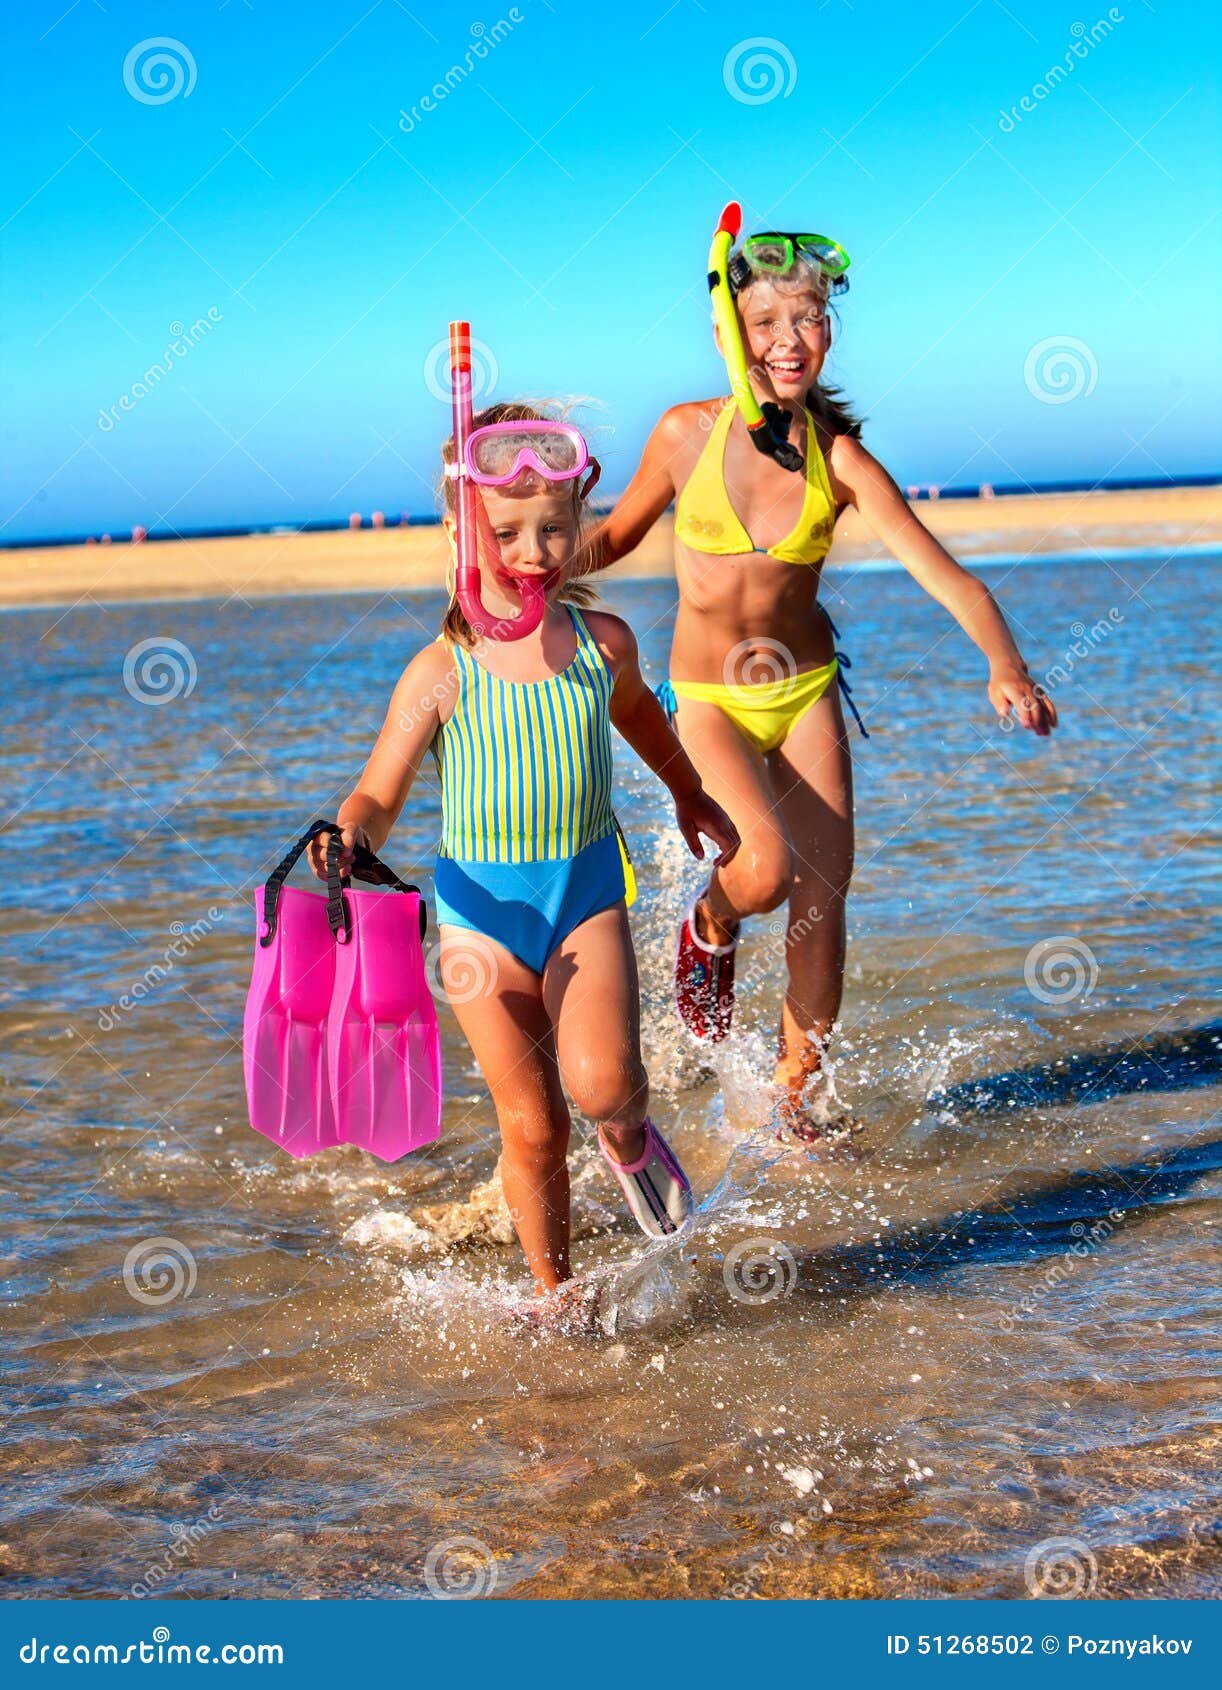 фото дети на голом пляже фото 71